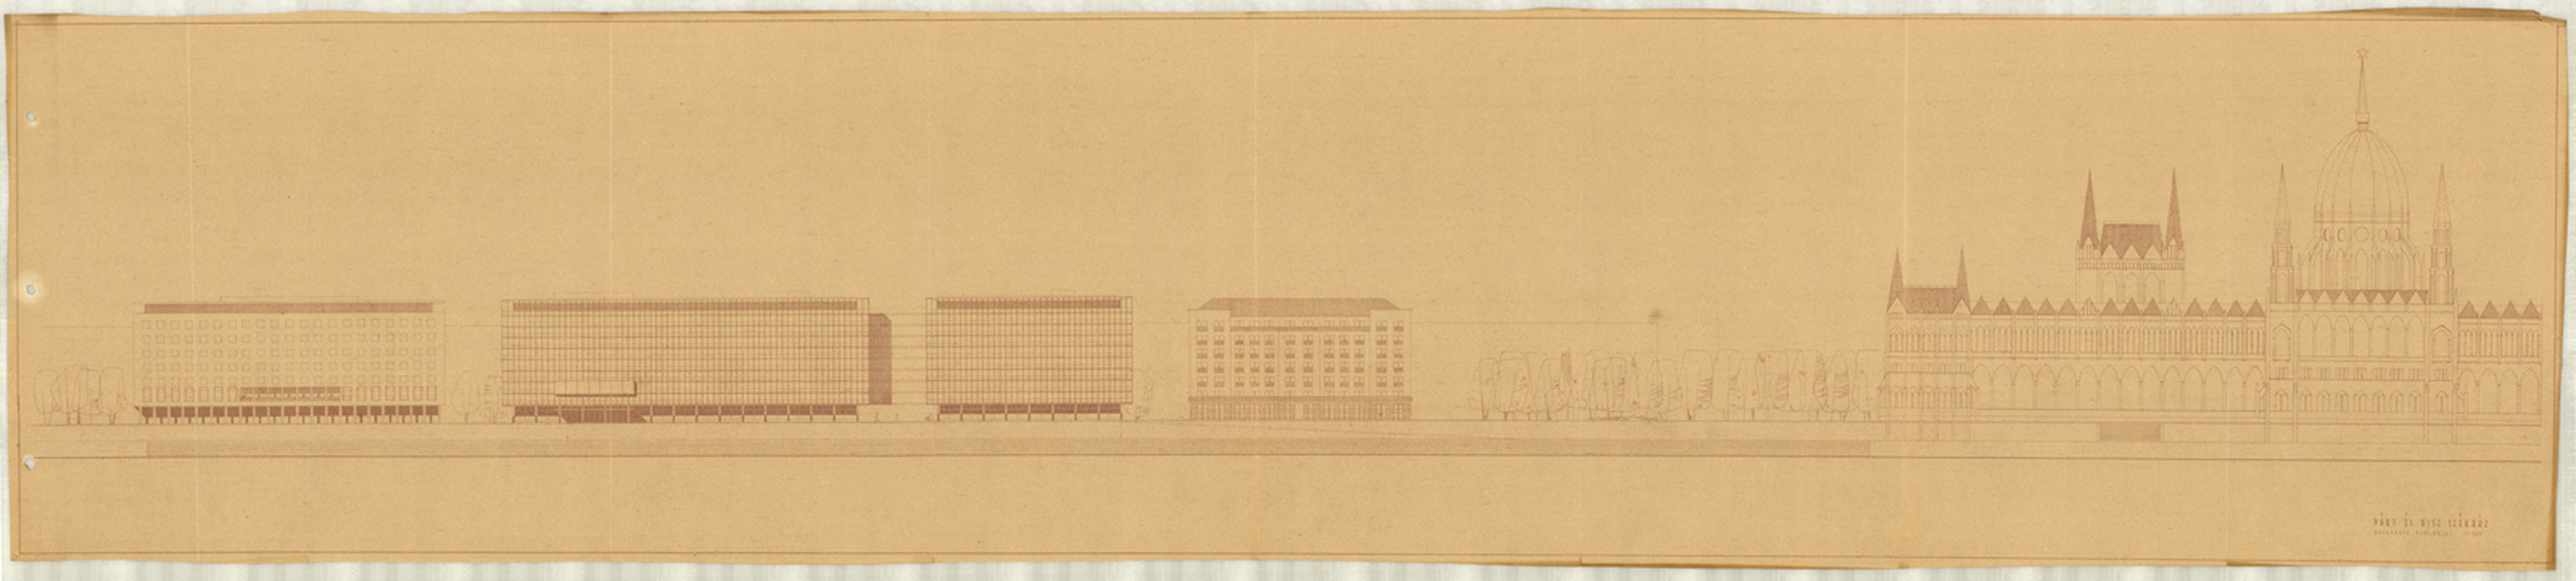 Dúl Dezső (ÁÉTV): Párt- és KISZ-székház, tanulmányterv, dunai nézet, 1960
